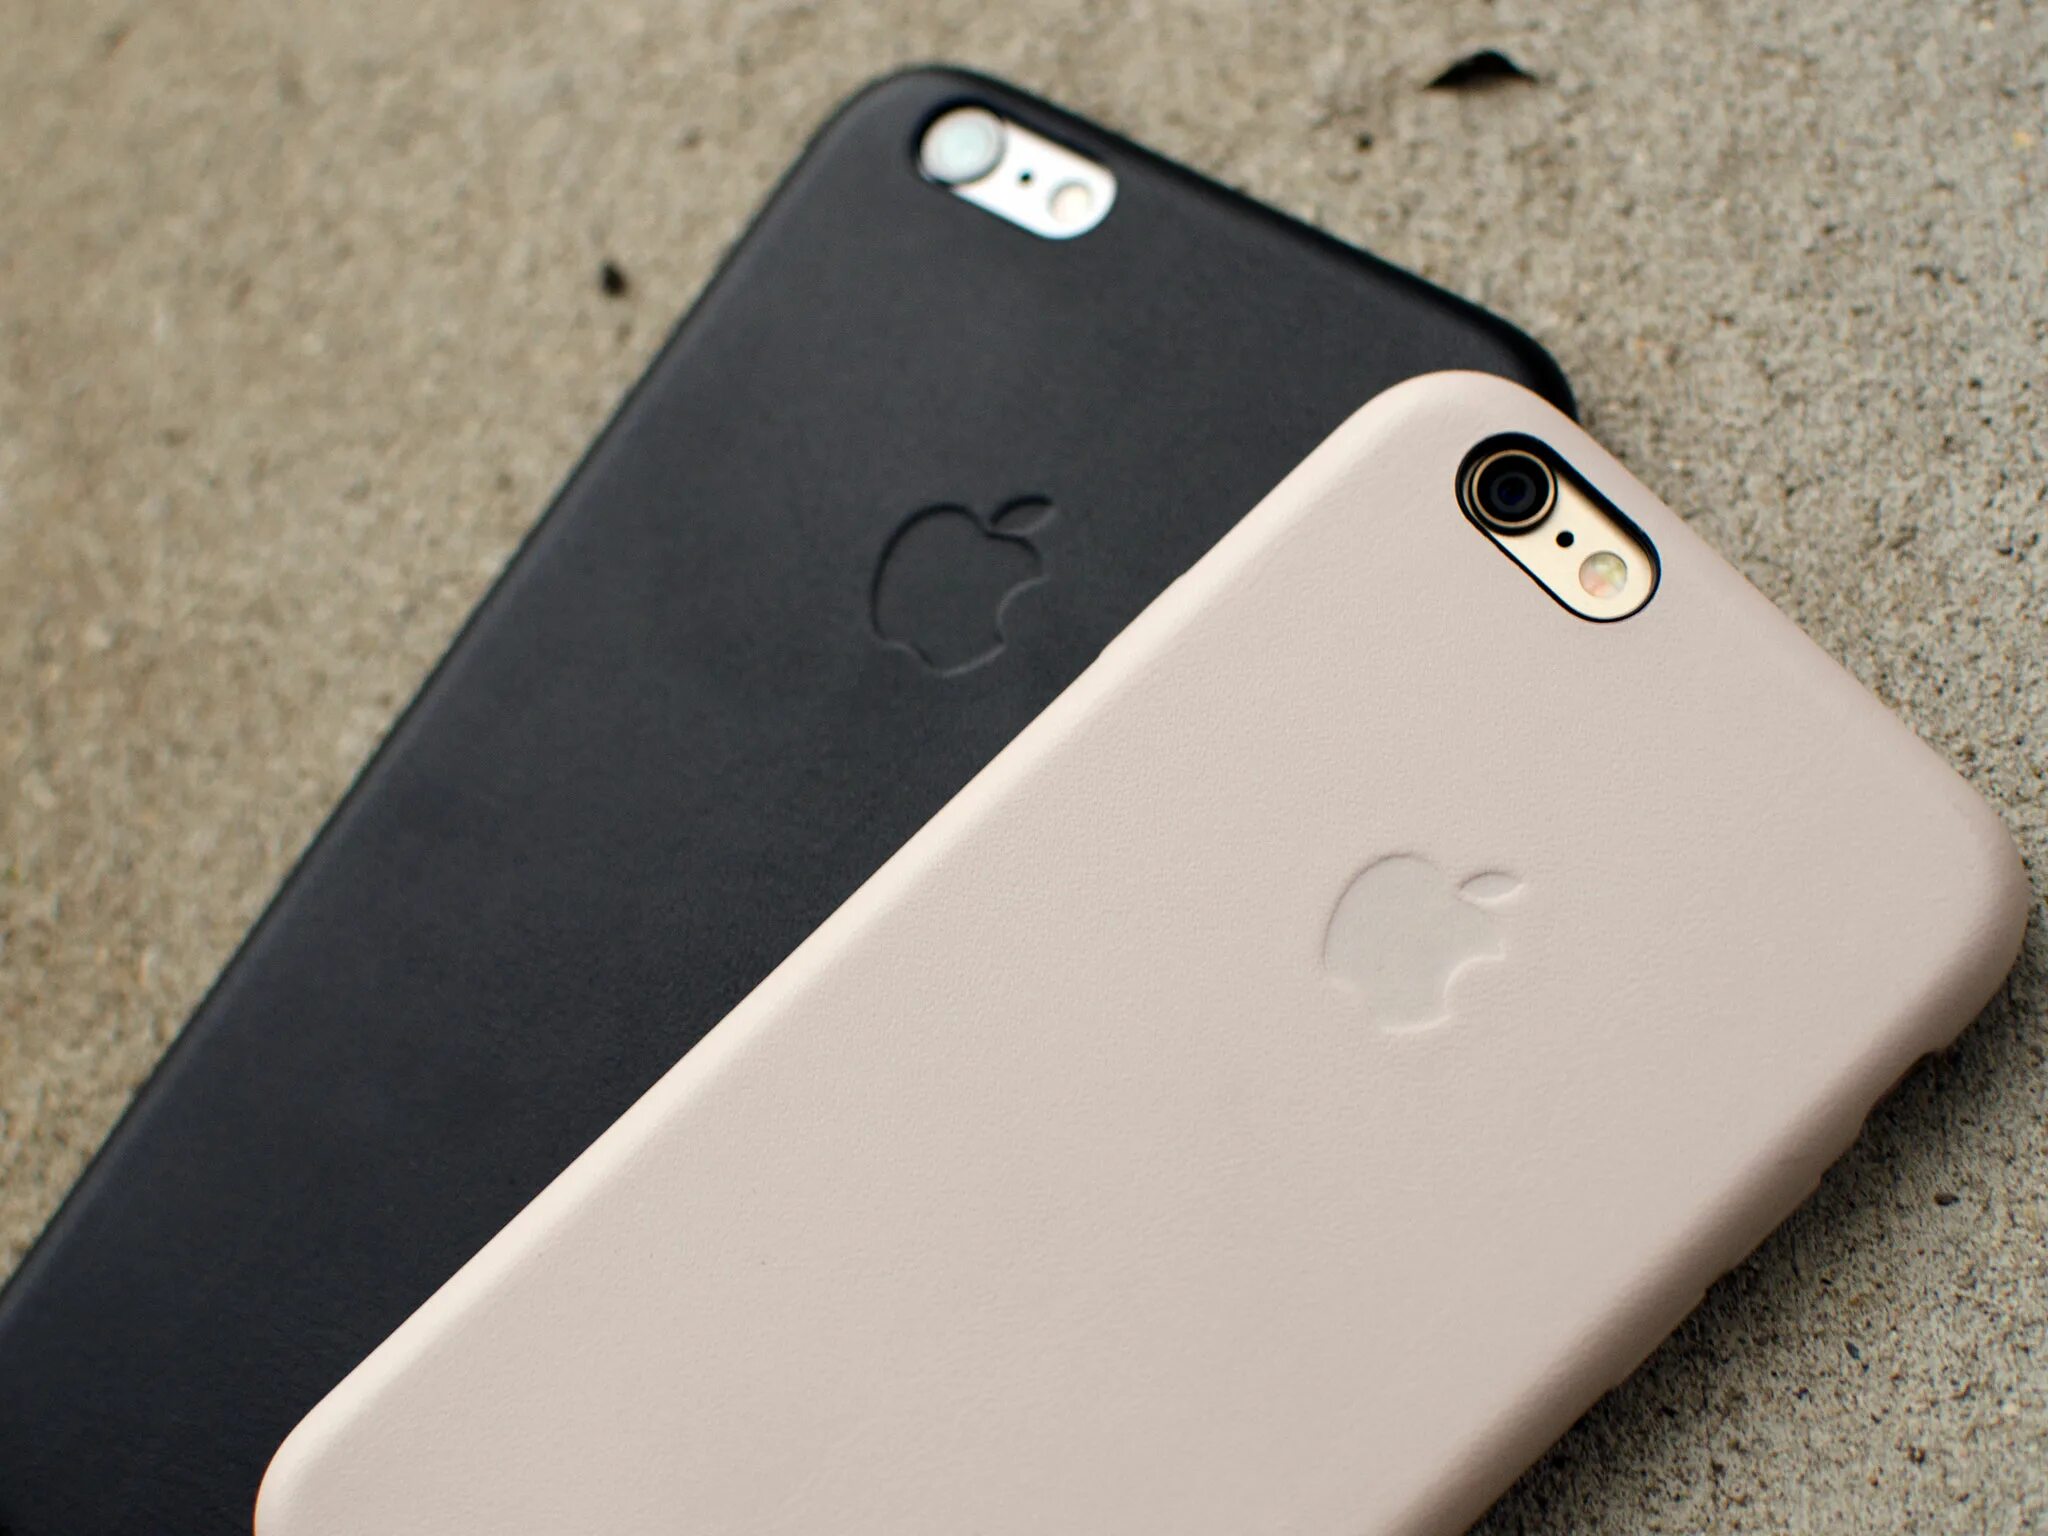 Подходит ли чехол 13 айфона на 15. Apple Leather Case iphone 7. Крышка от айфона 6. Apple Leather Case iphone 13. Подойдет ли чехол от 7 айфона на 6s.